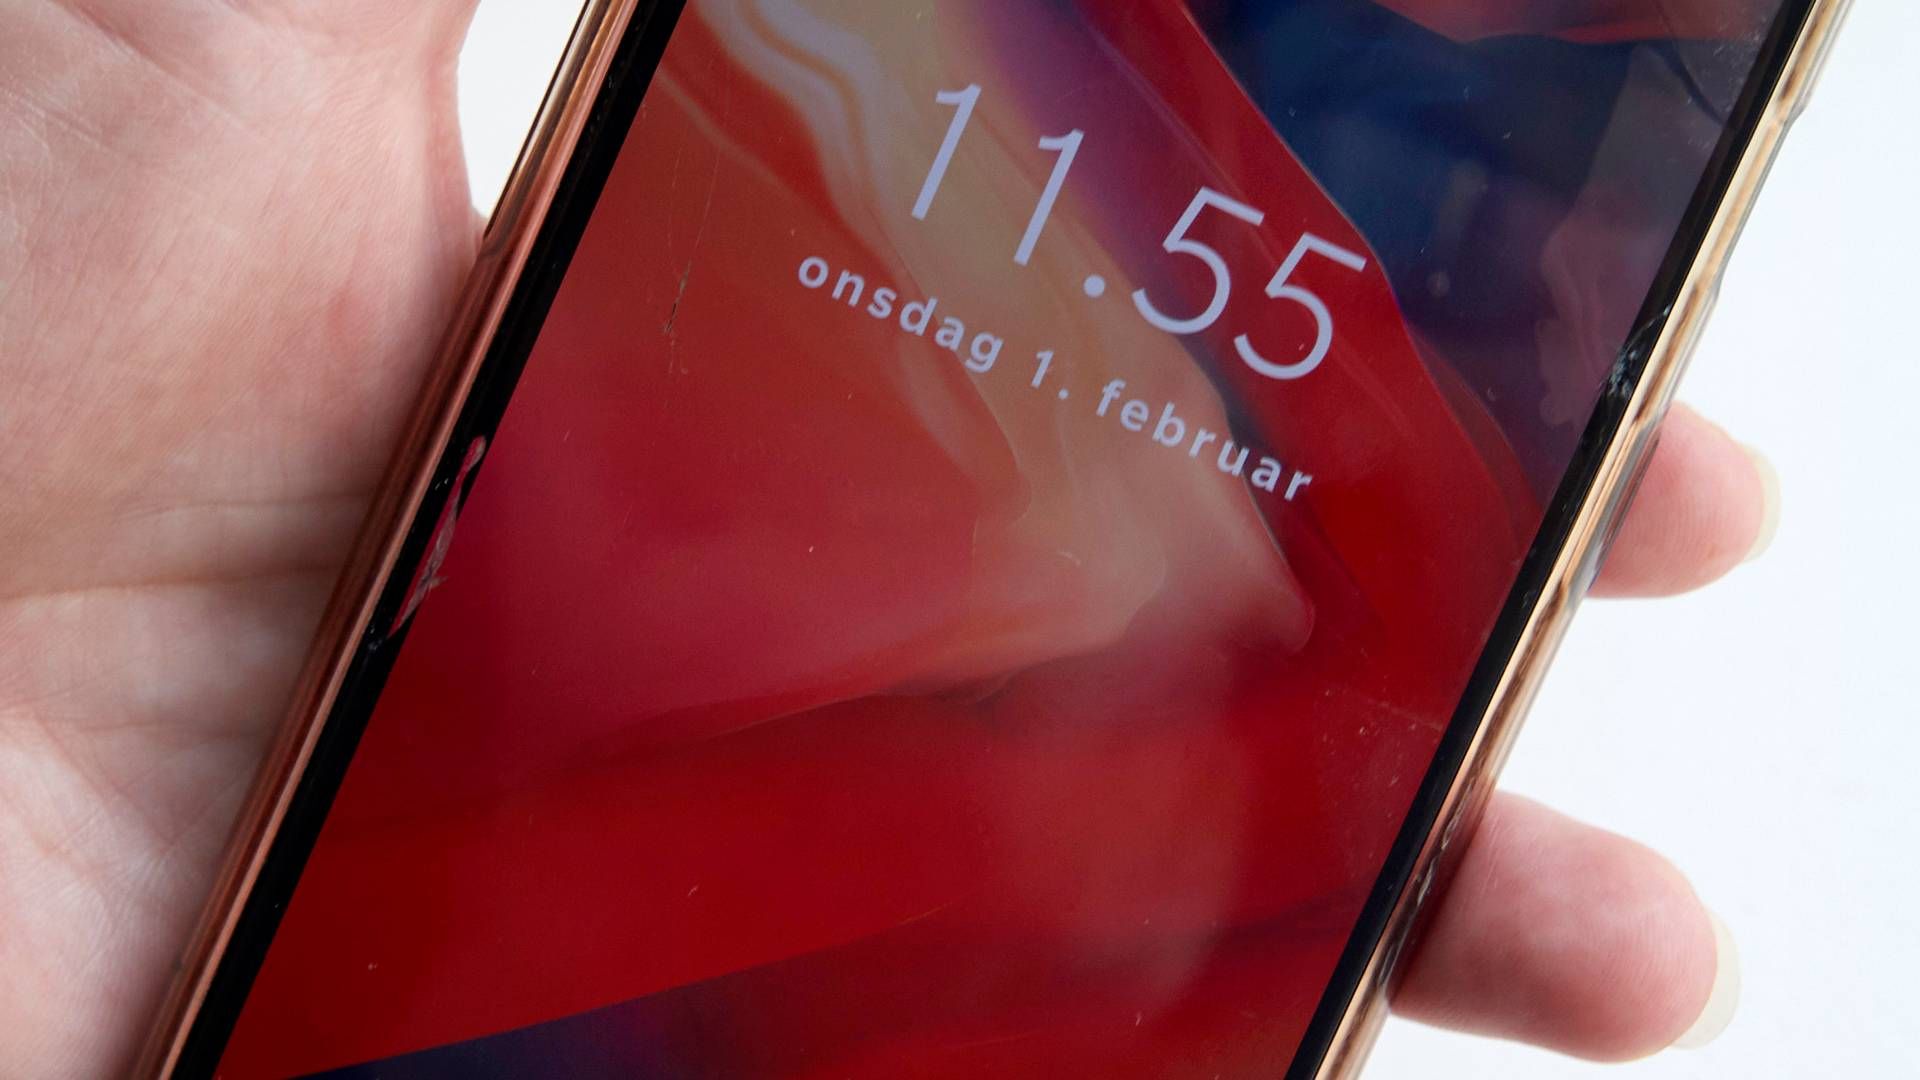 25-årig er sigtet for svindel med bl.a. Iphones, der blev sat til salg på DBA, men aldrig leveret. | Foto: Jens Dresling